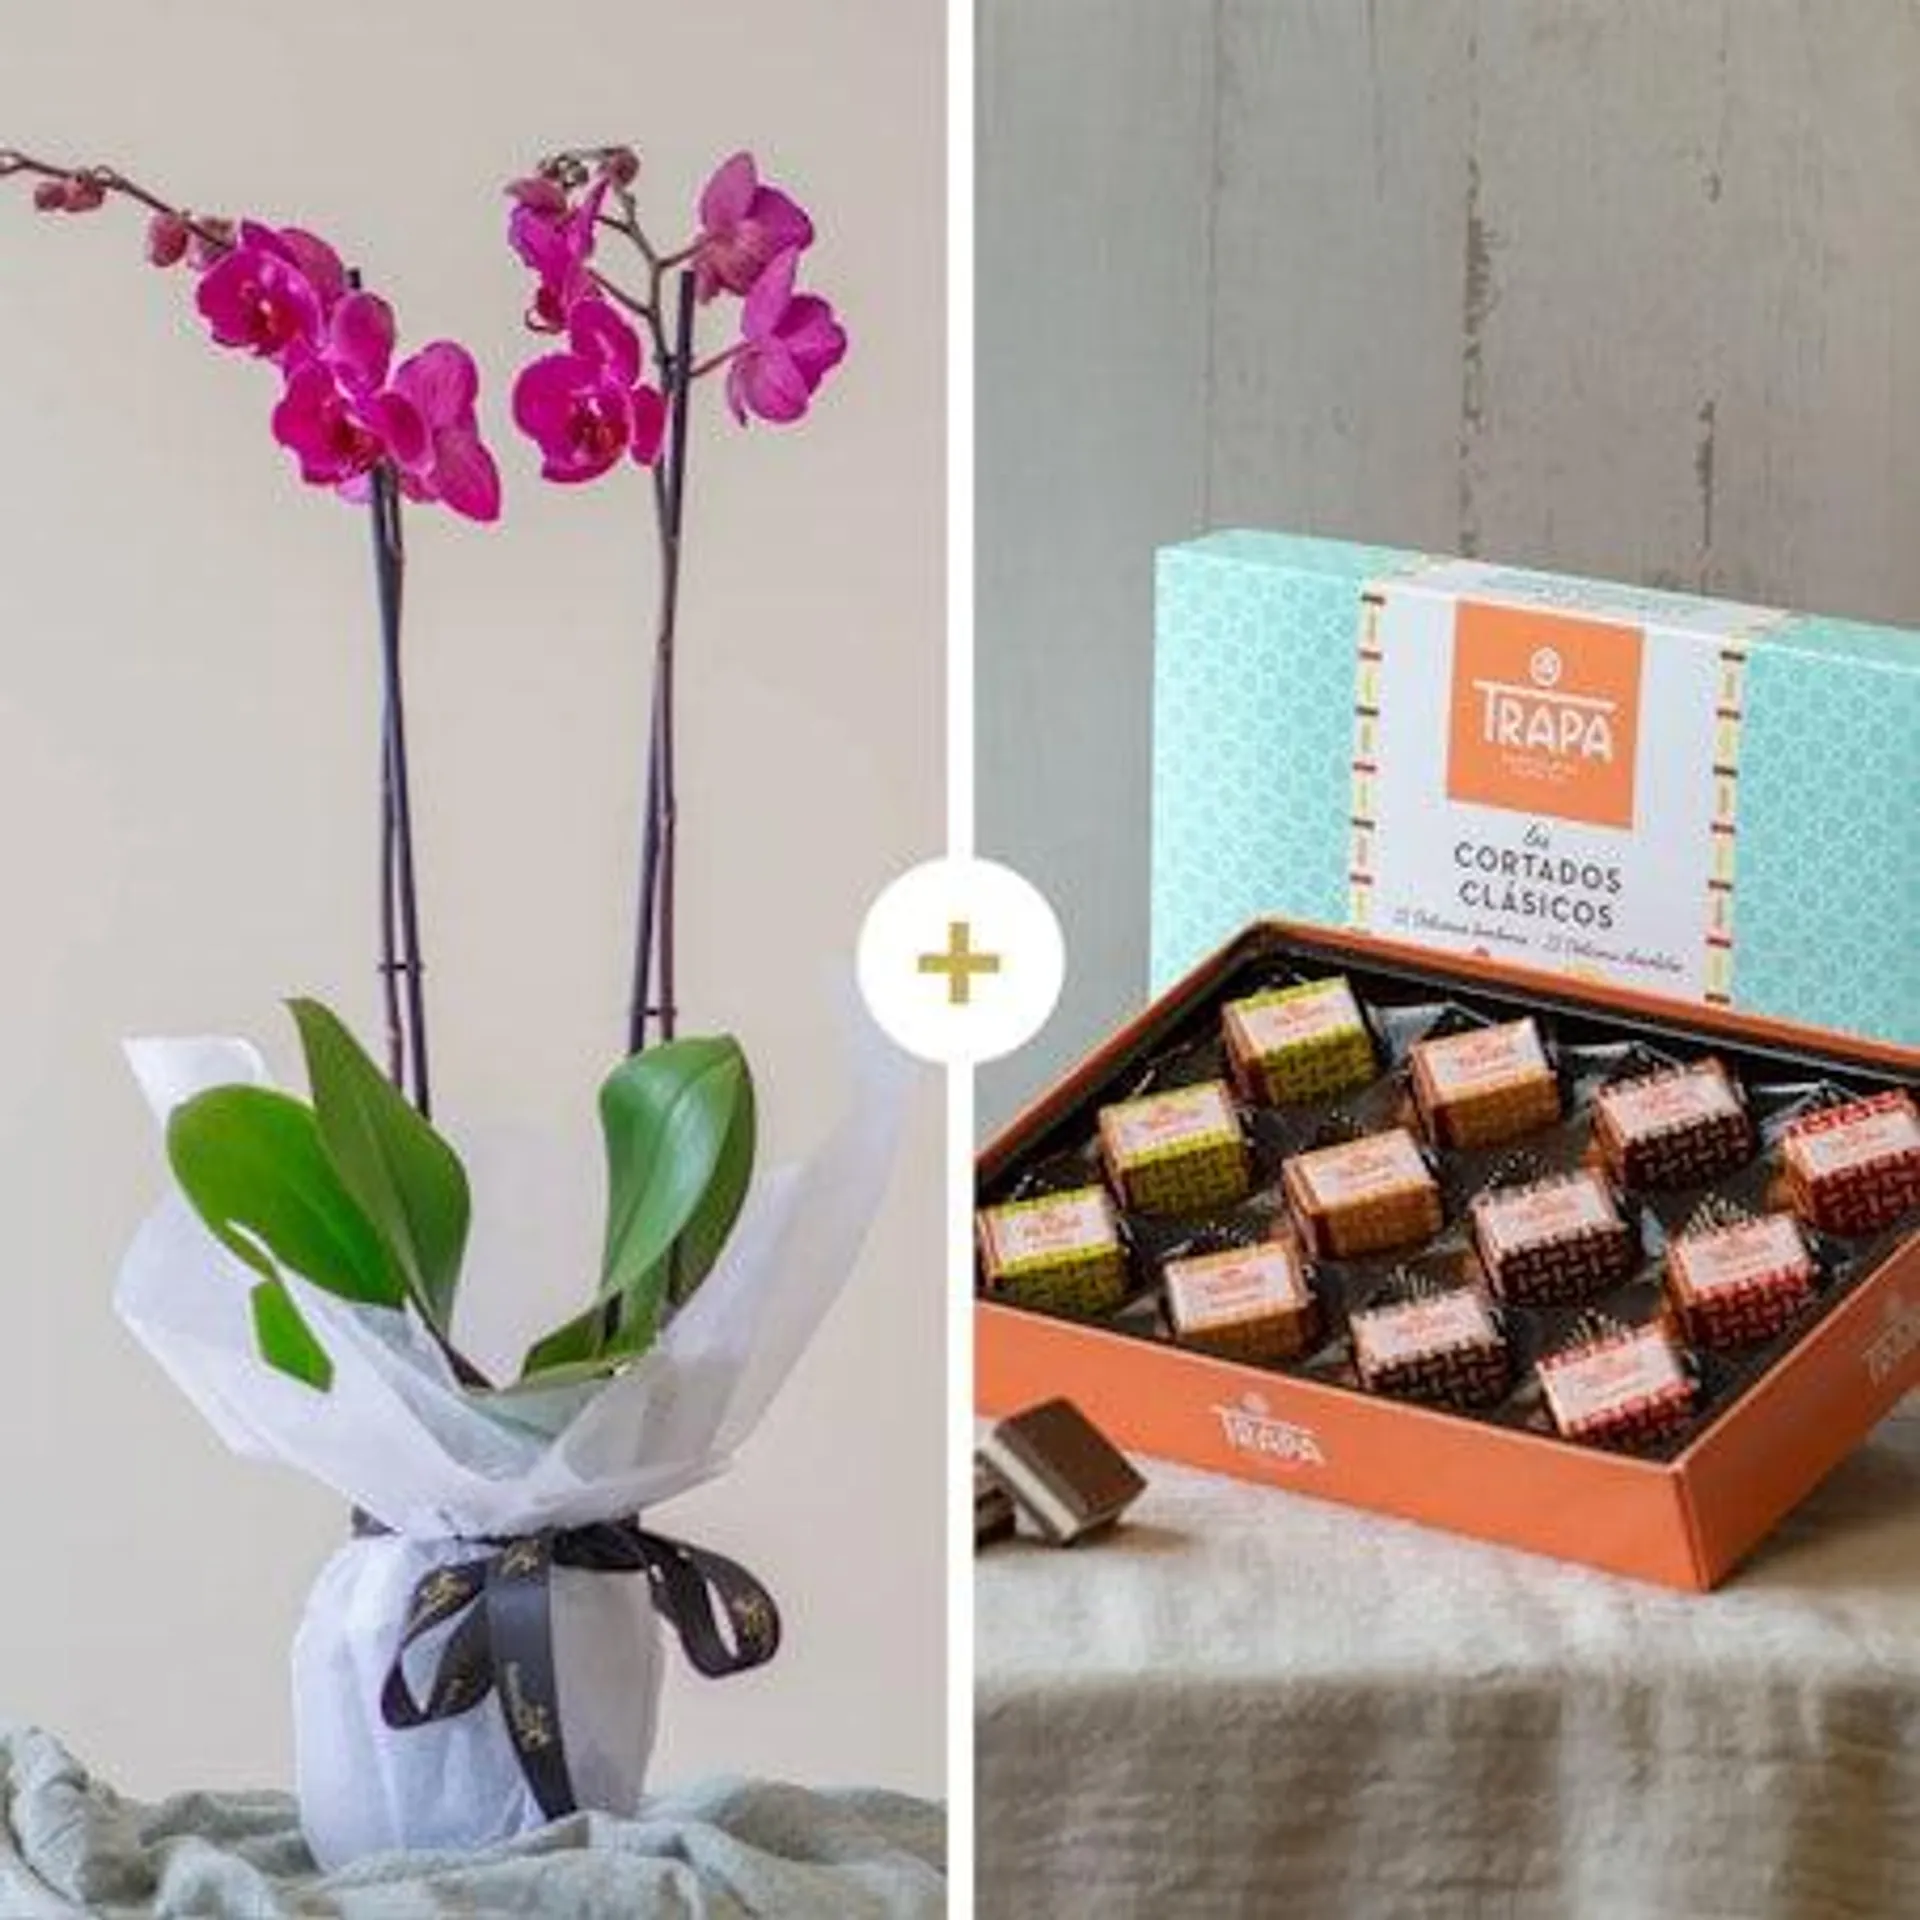 Pack con orquídea y chocolate trapa